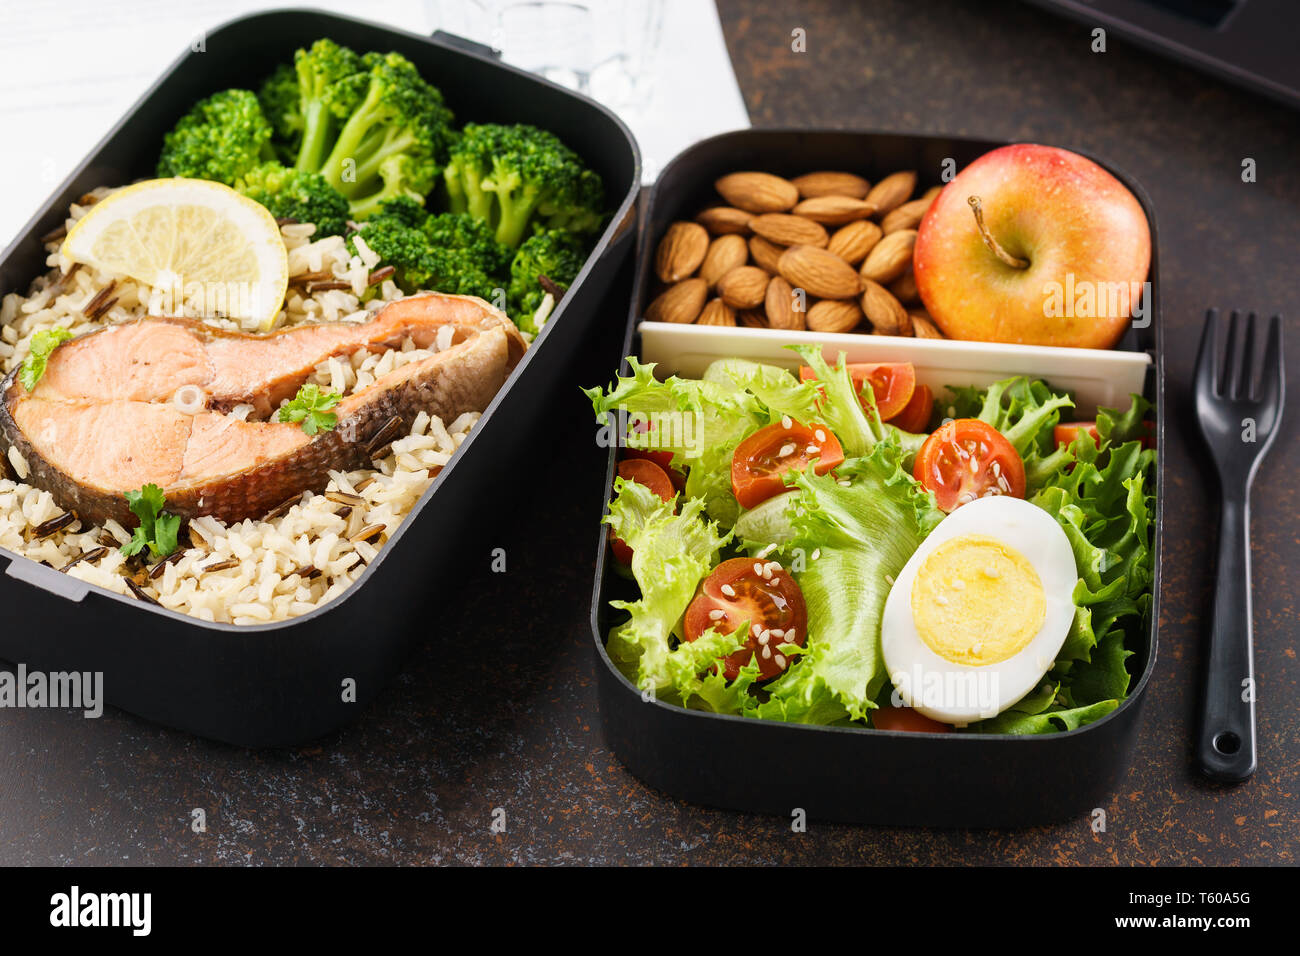 Gesundes Mittagessen im Büro Arbeitsplatz. Takeaway Lunch Boxen mit Ernährung Lebensmittel - Fisch, Gemüse und Obst an Schreibtisch mit Laptop. Stockfoto